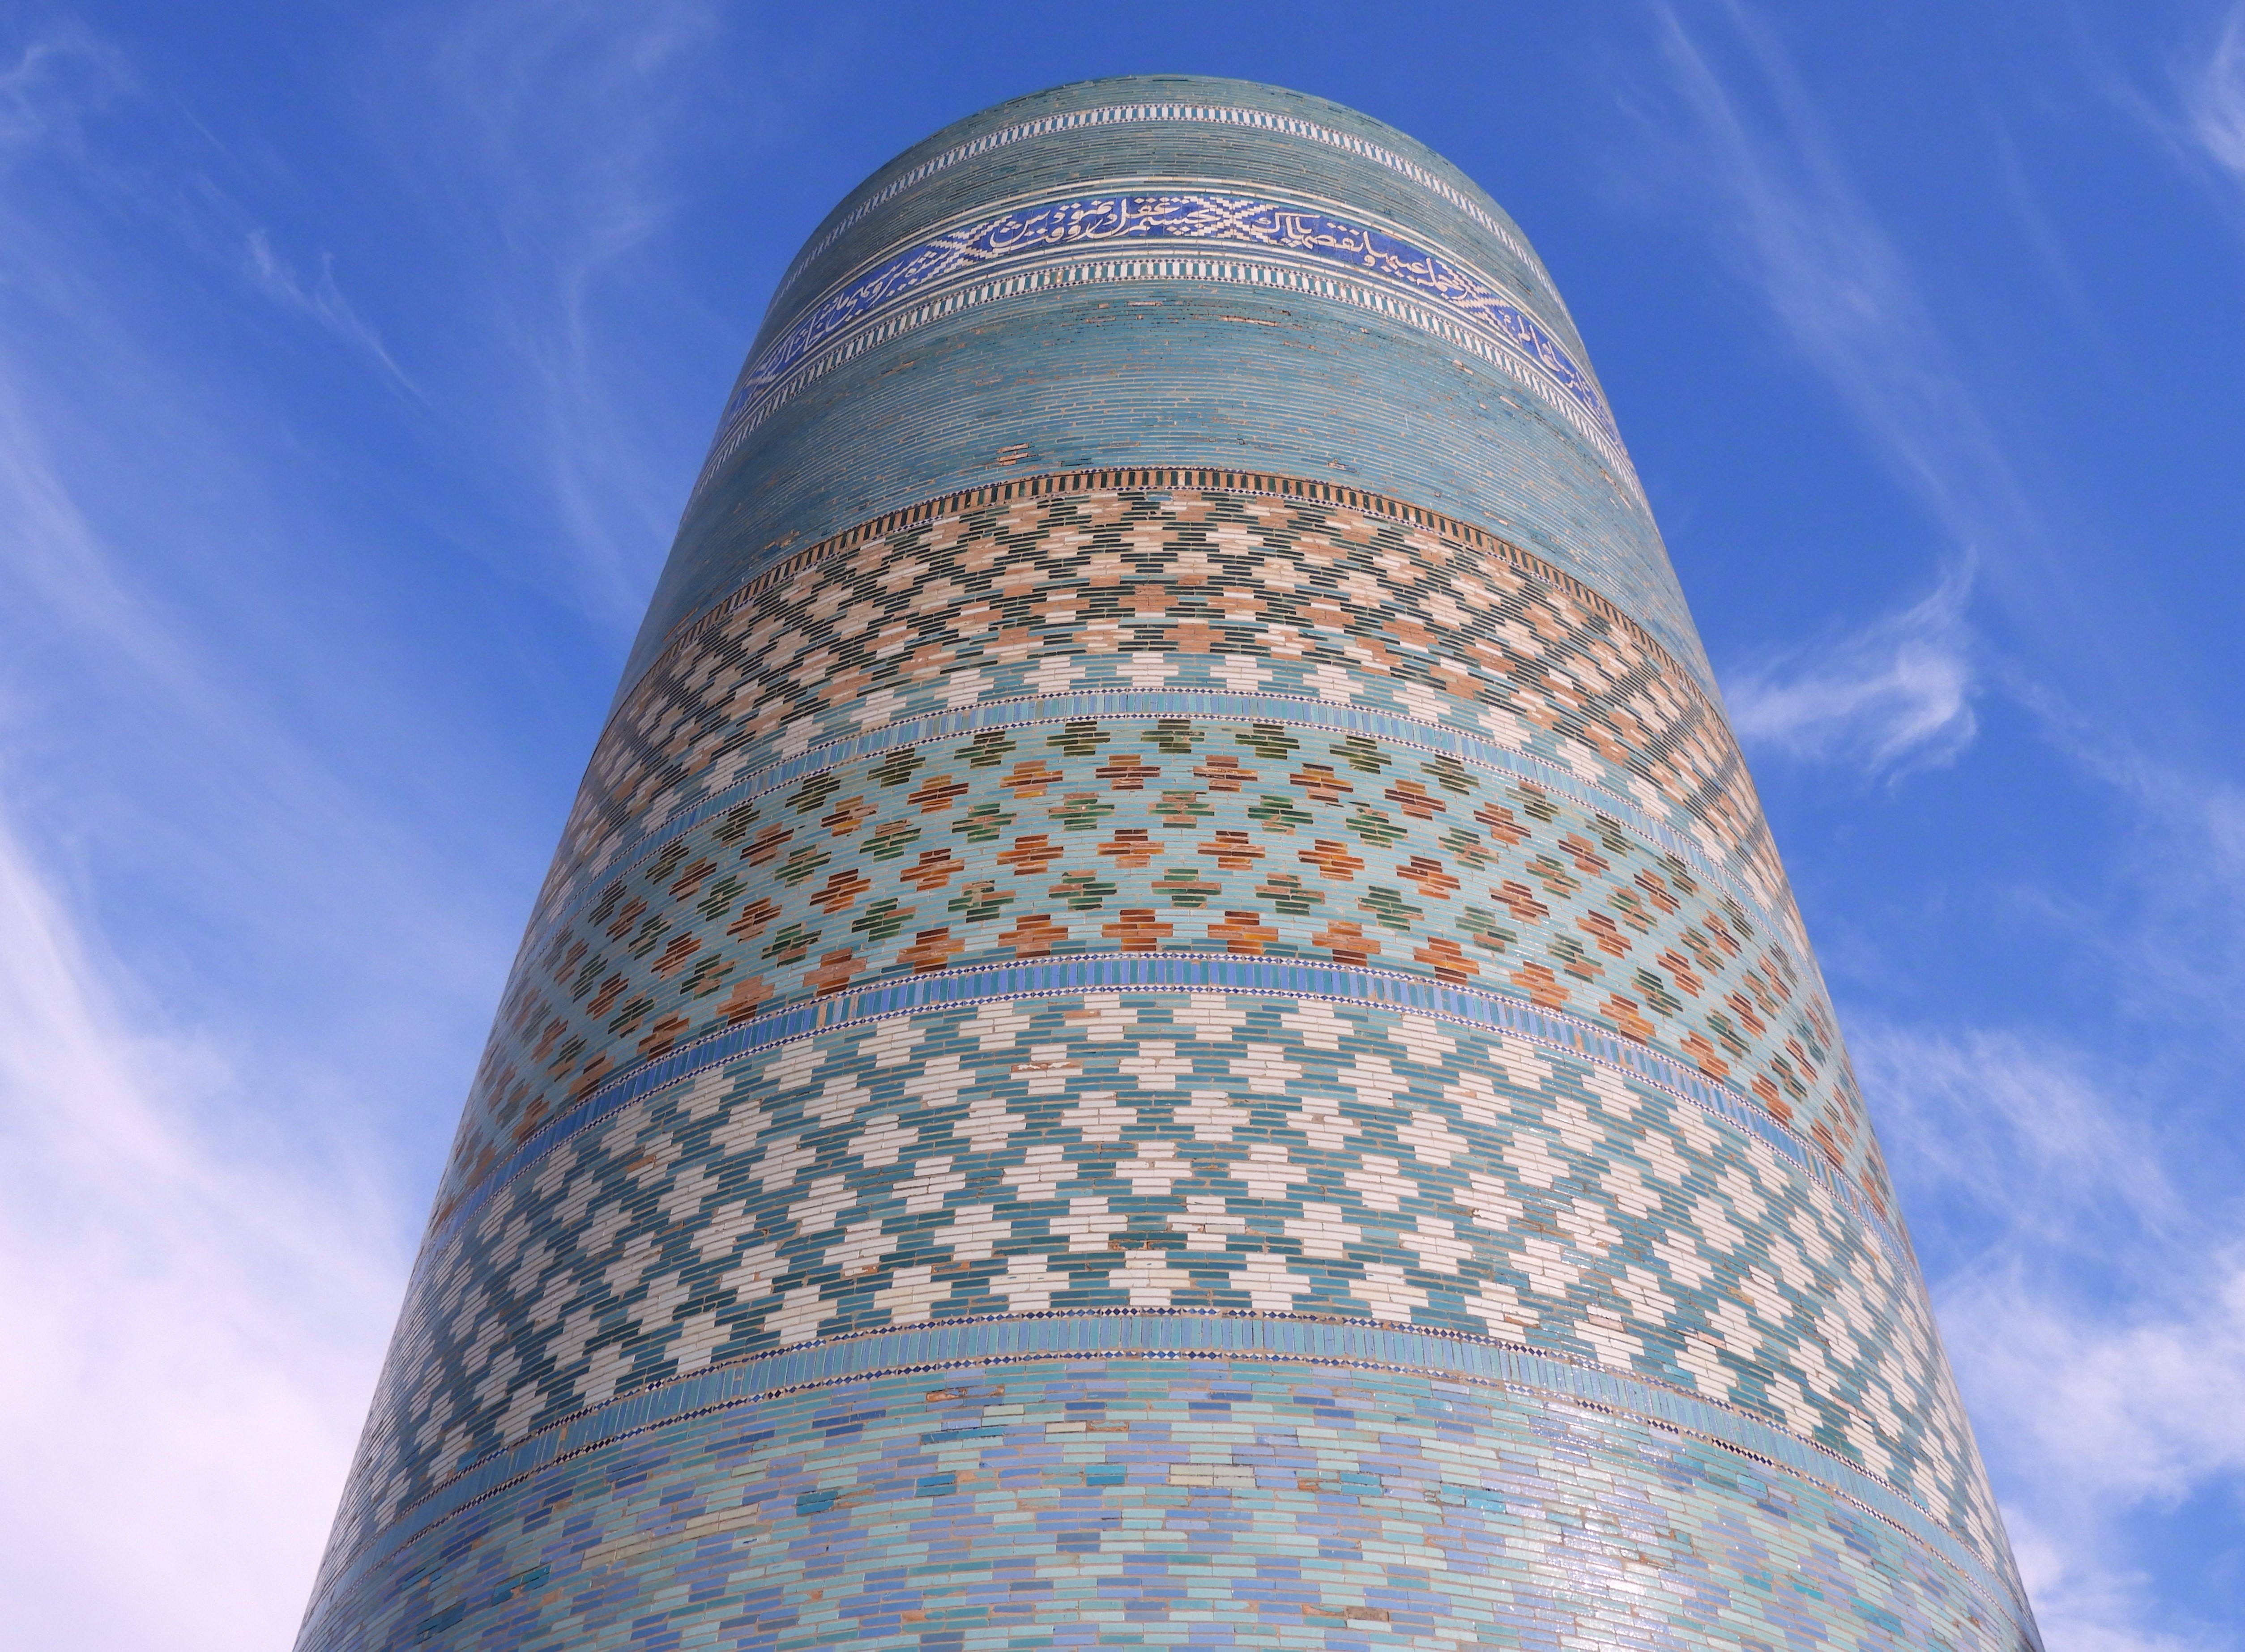 1258 - Kalta minareto minore a Khiva - Uzbekistan